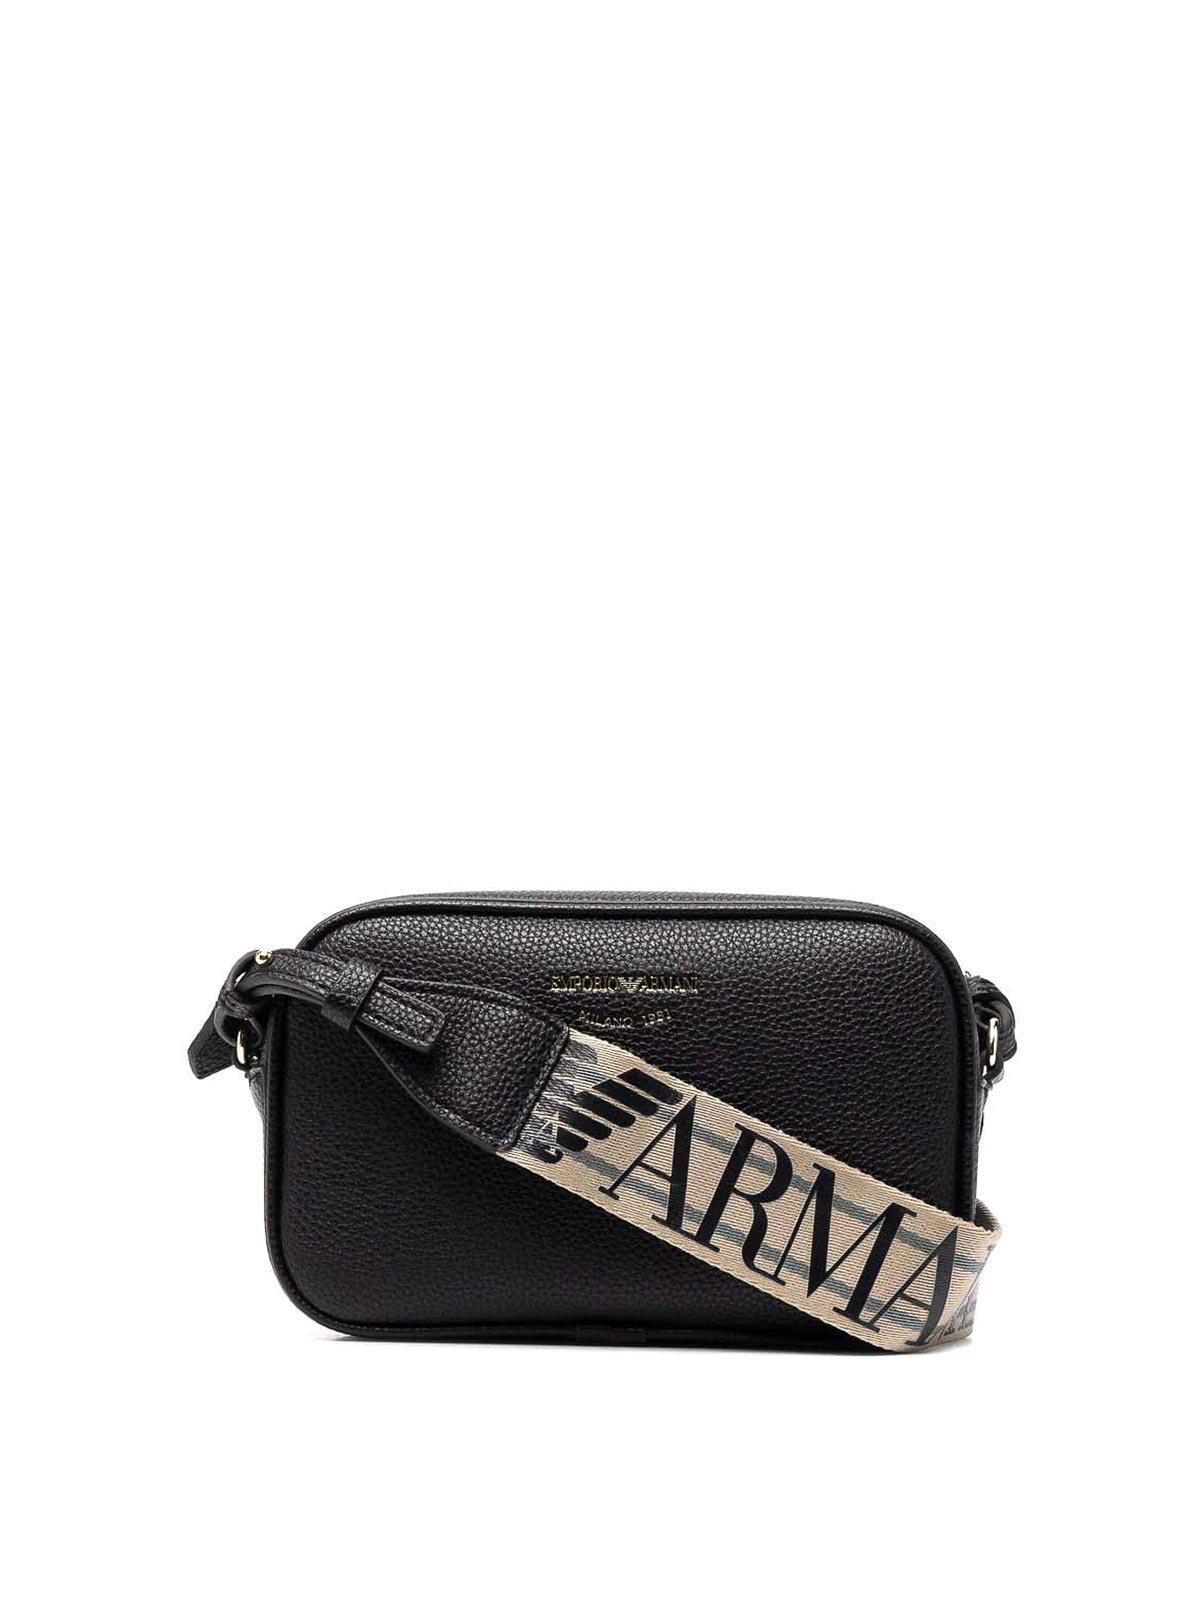 Shop Emporio Armani Camera Bag In Black